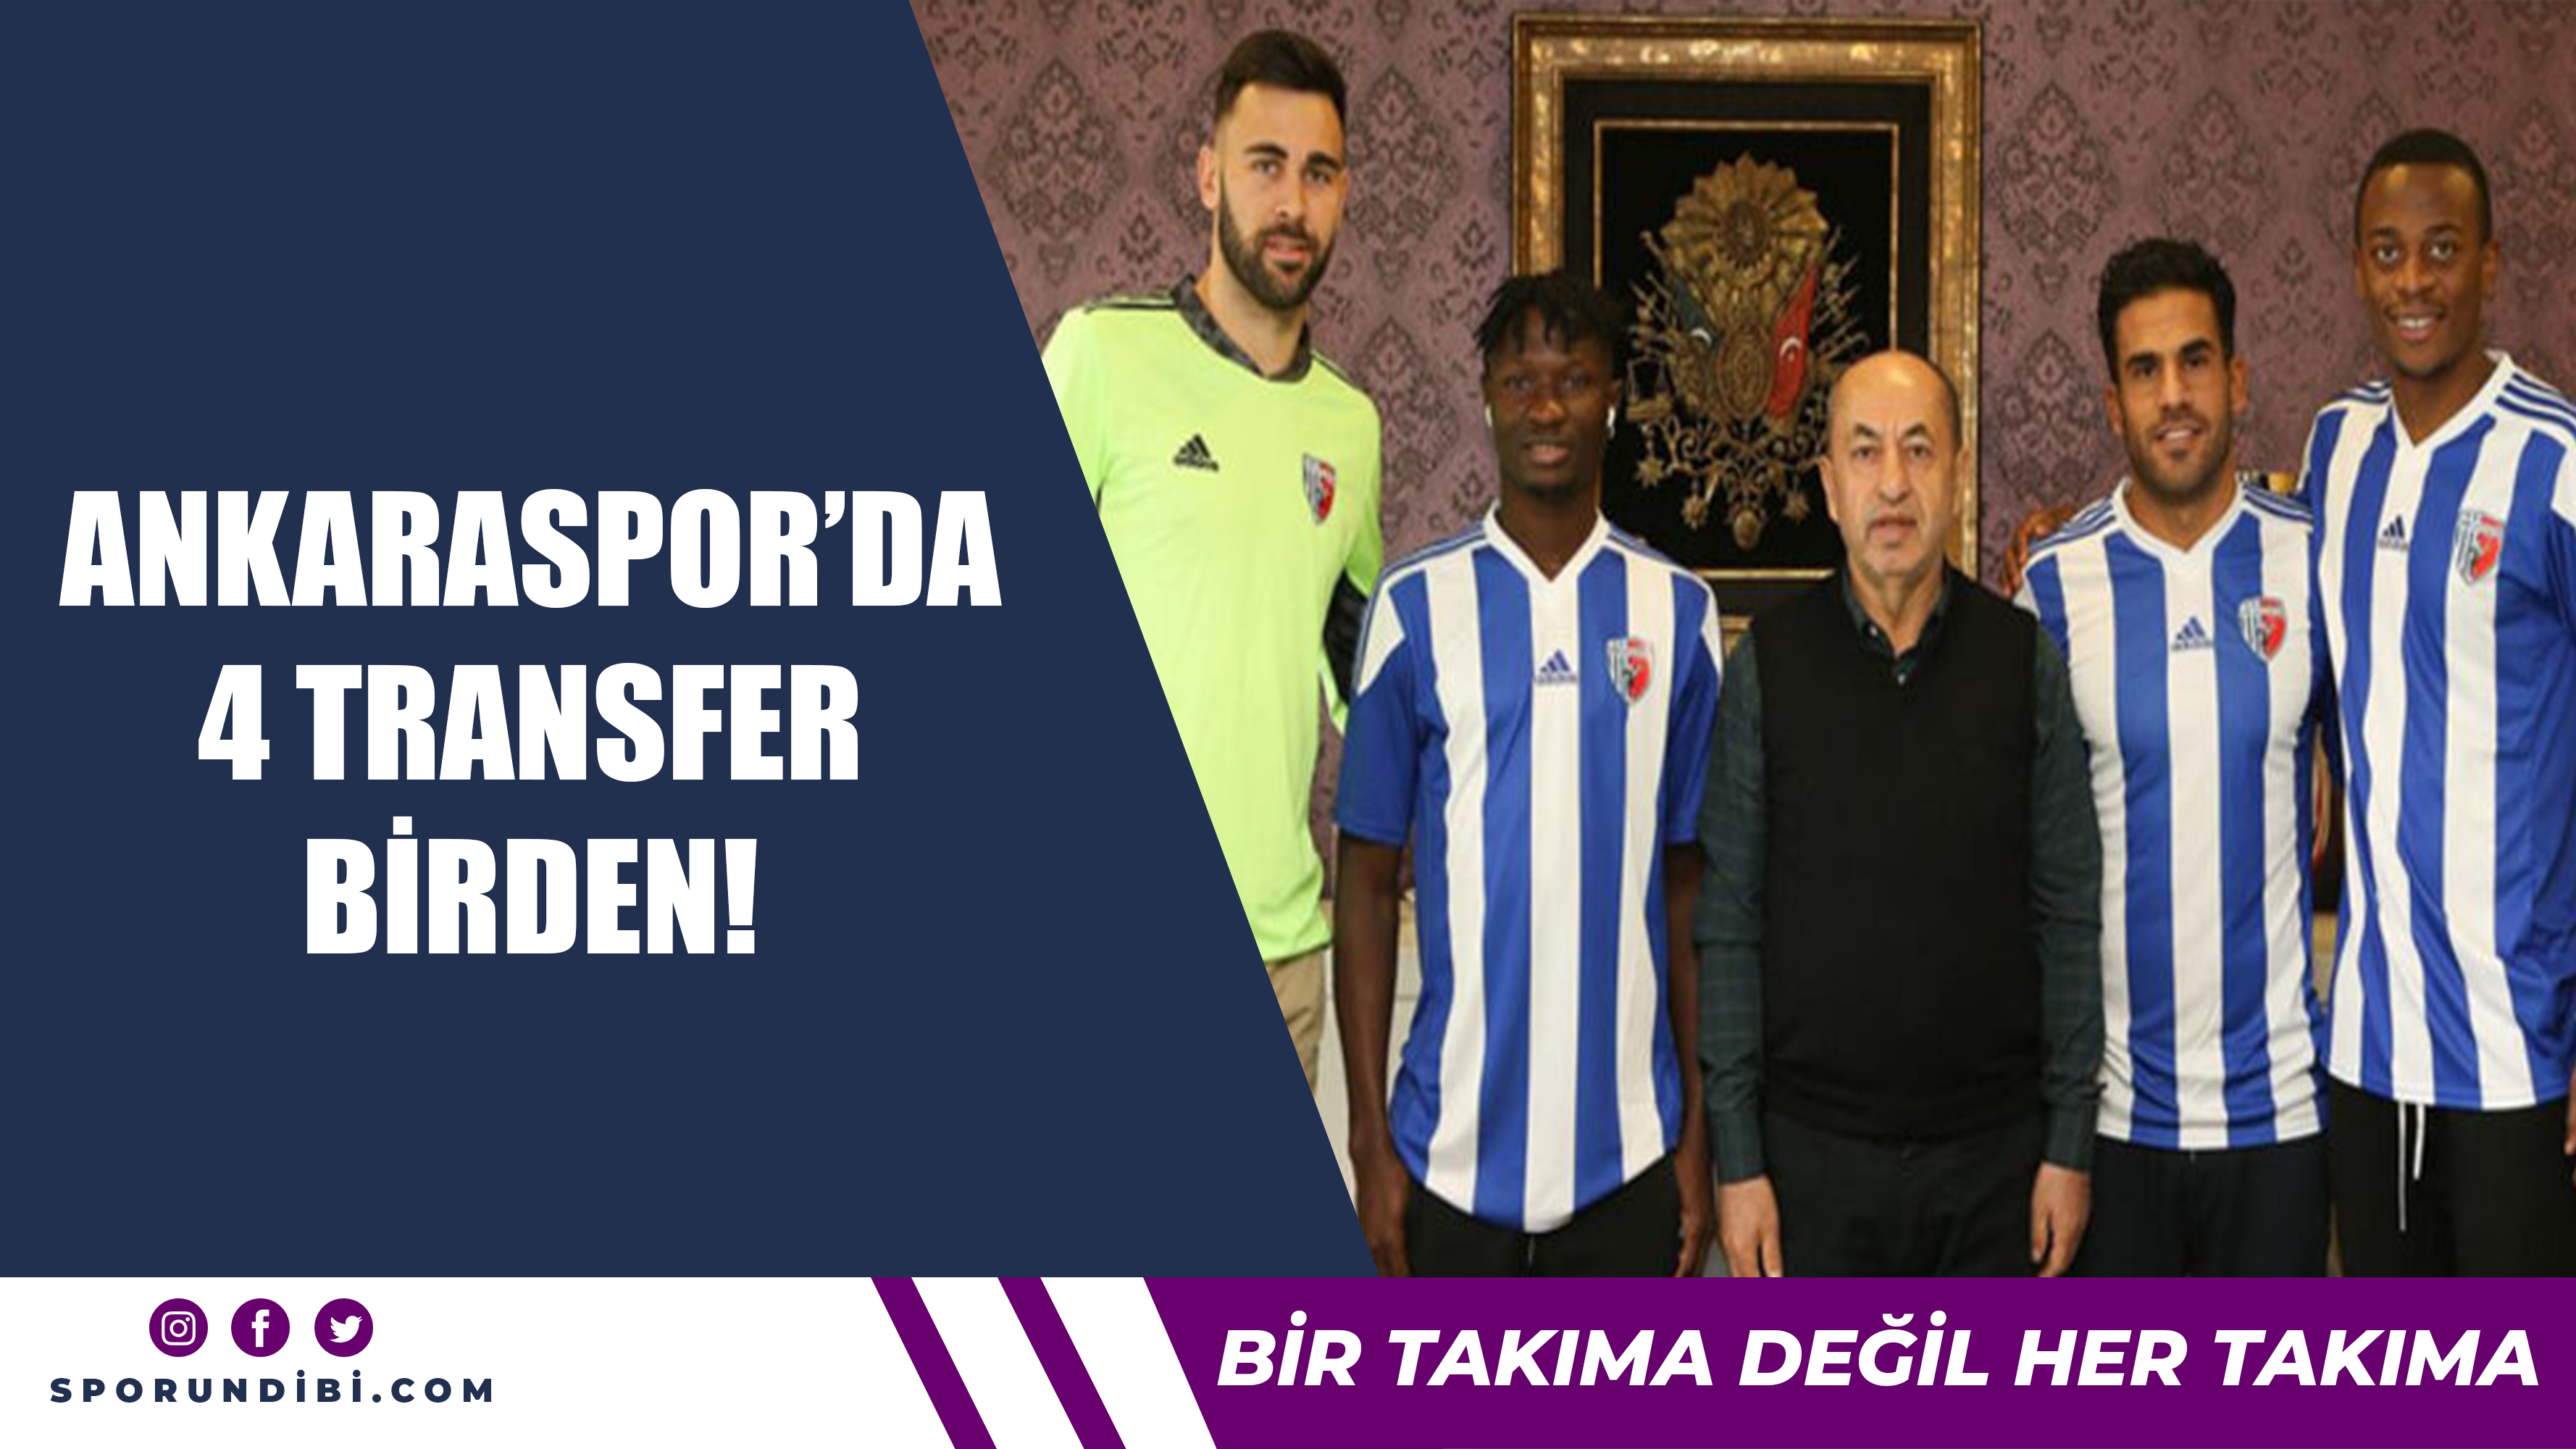 Ankaraspor'da 4 transfer birden!